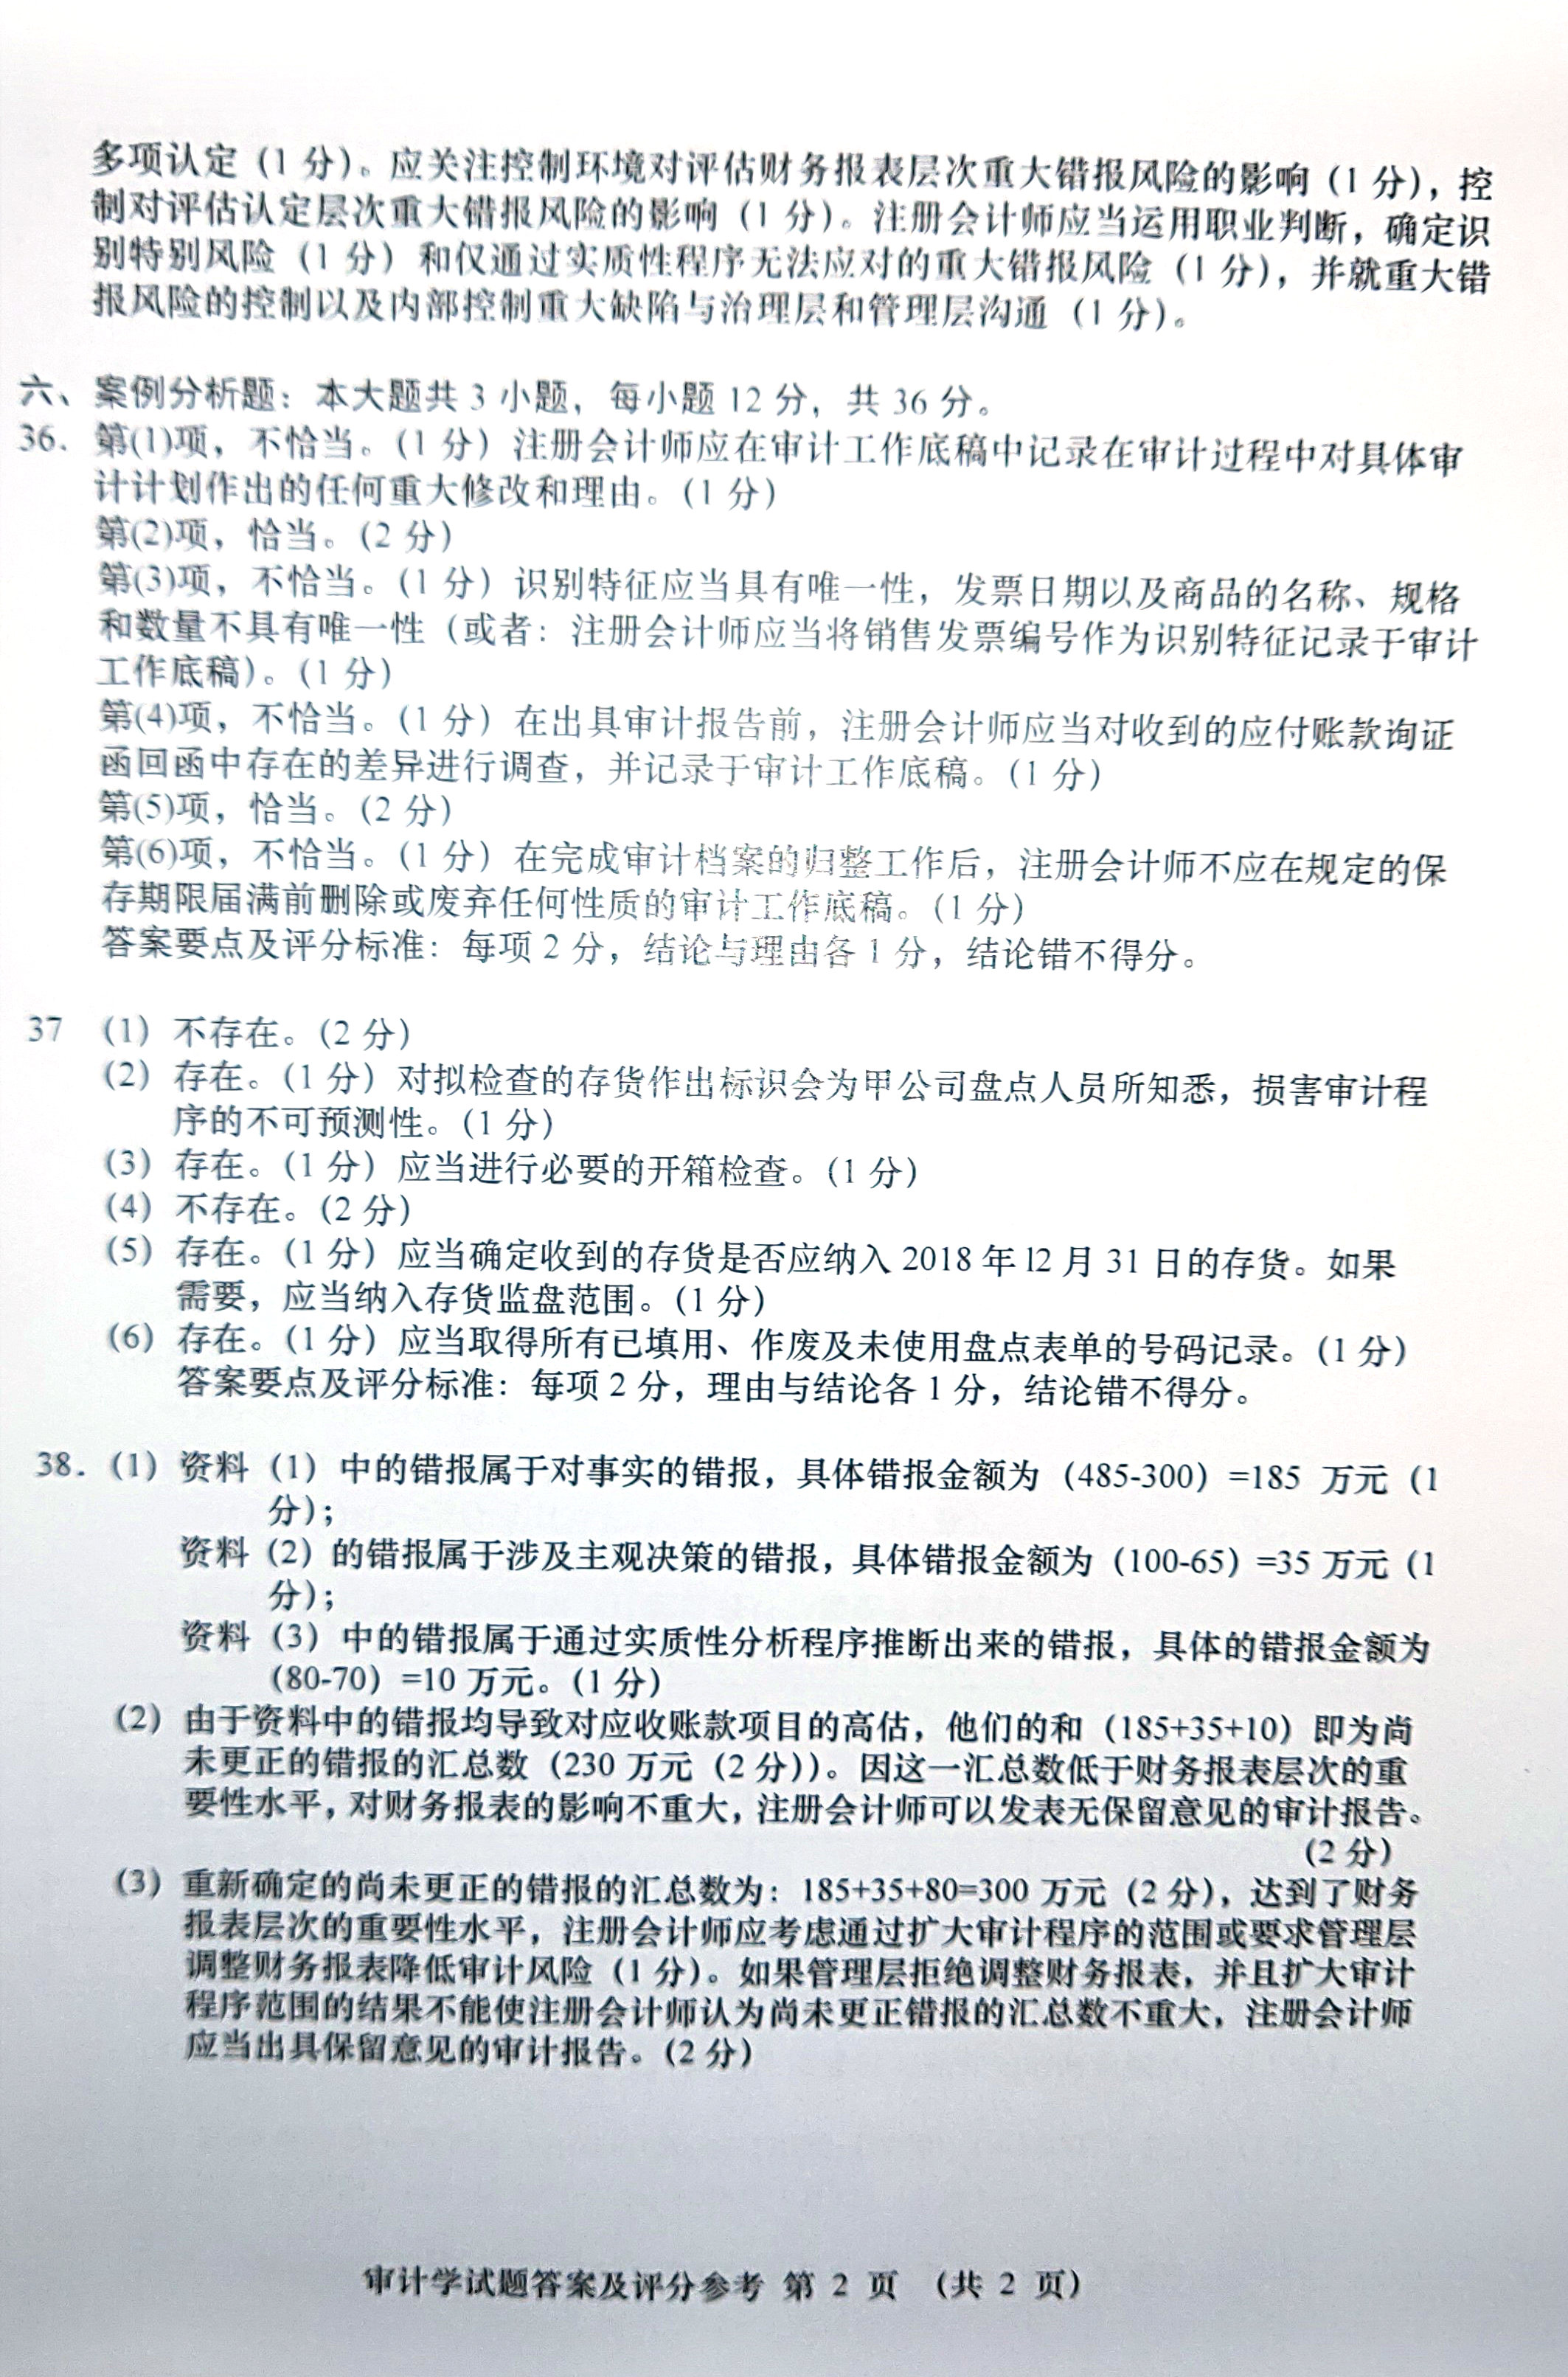 2019年04月贵州自考00160审计真题及答案